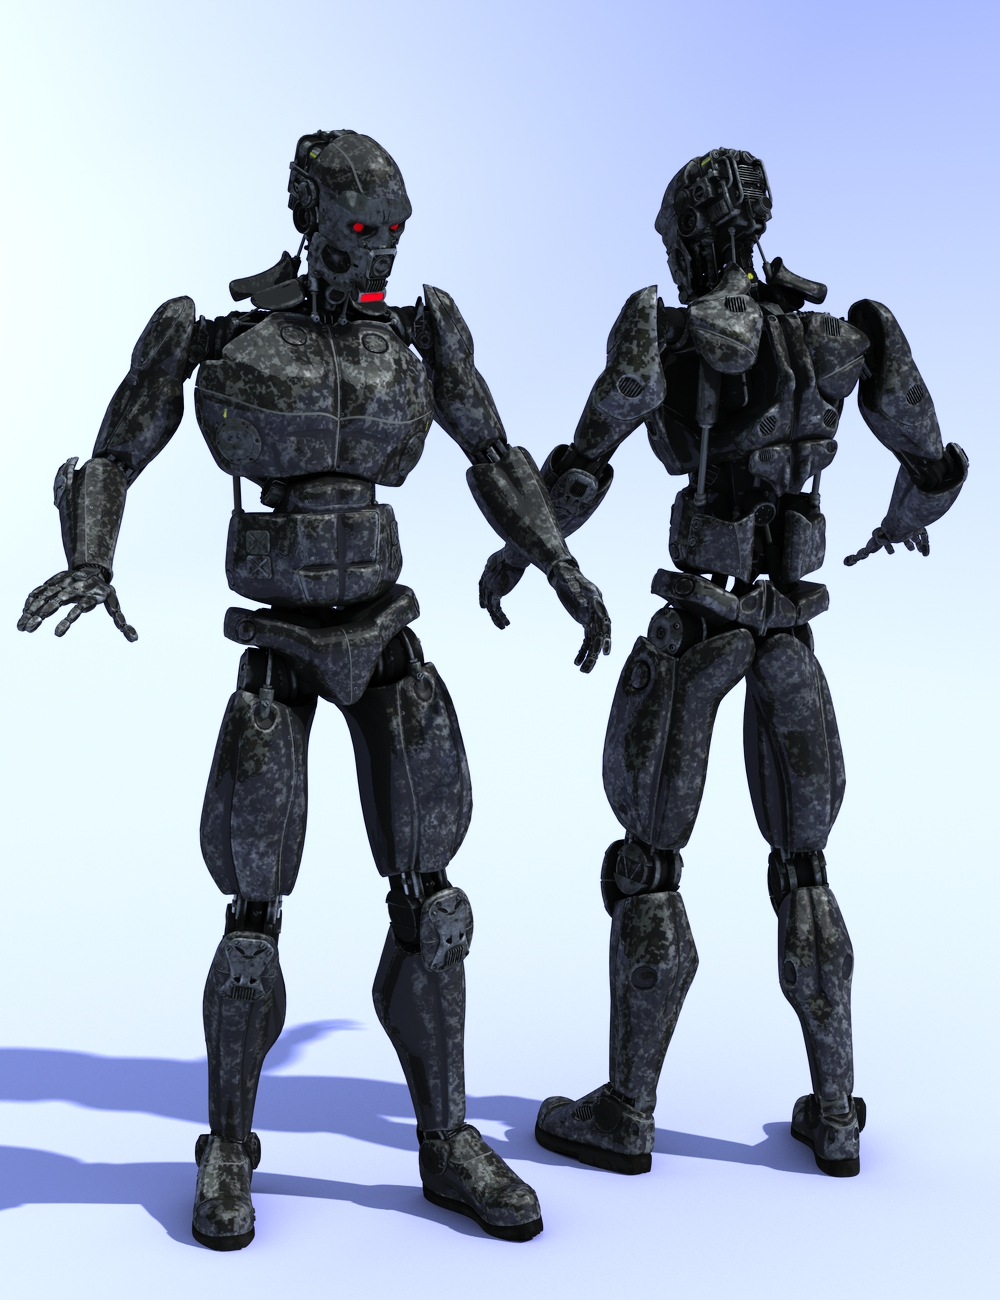 WeaponMech by: DzFire, 3D Models by Daz 3D